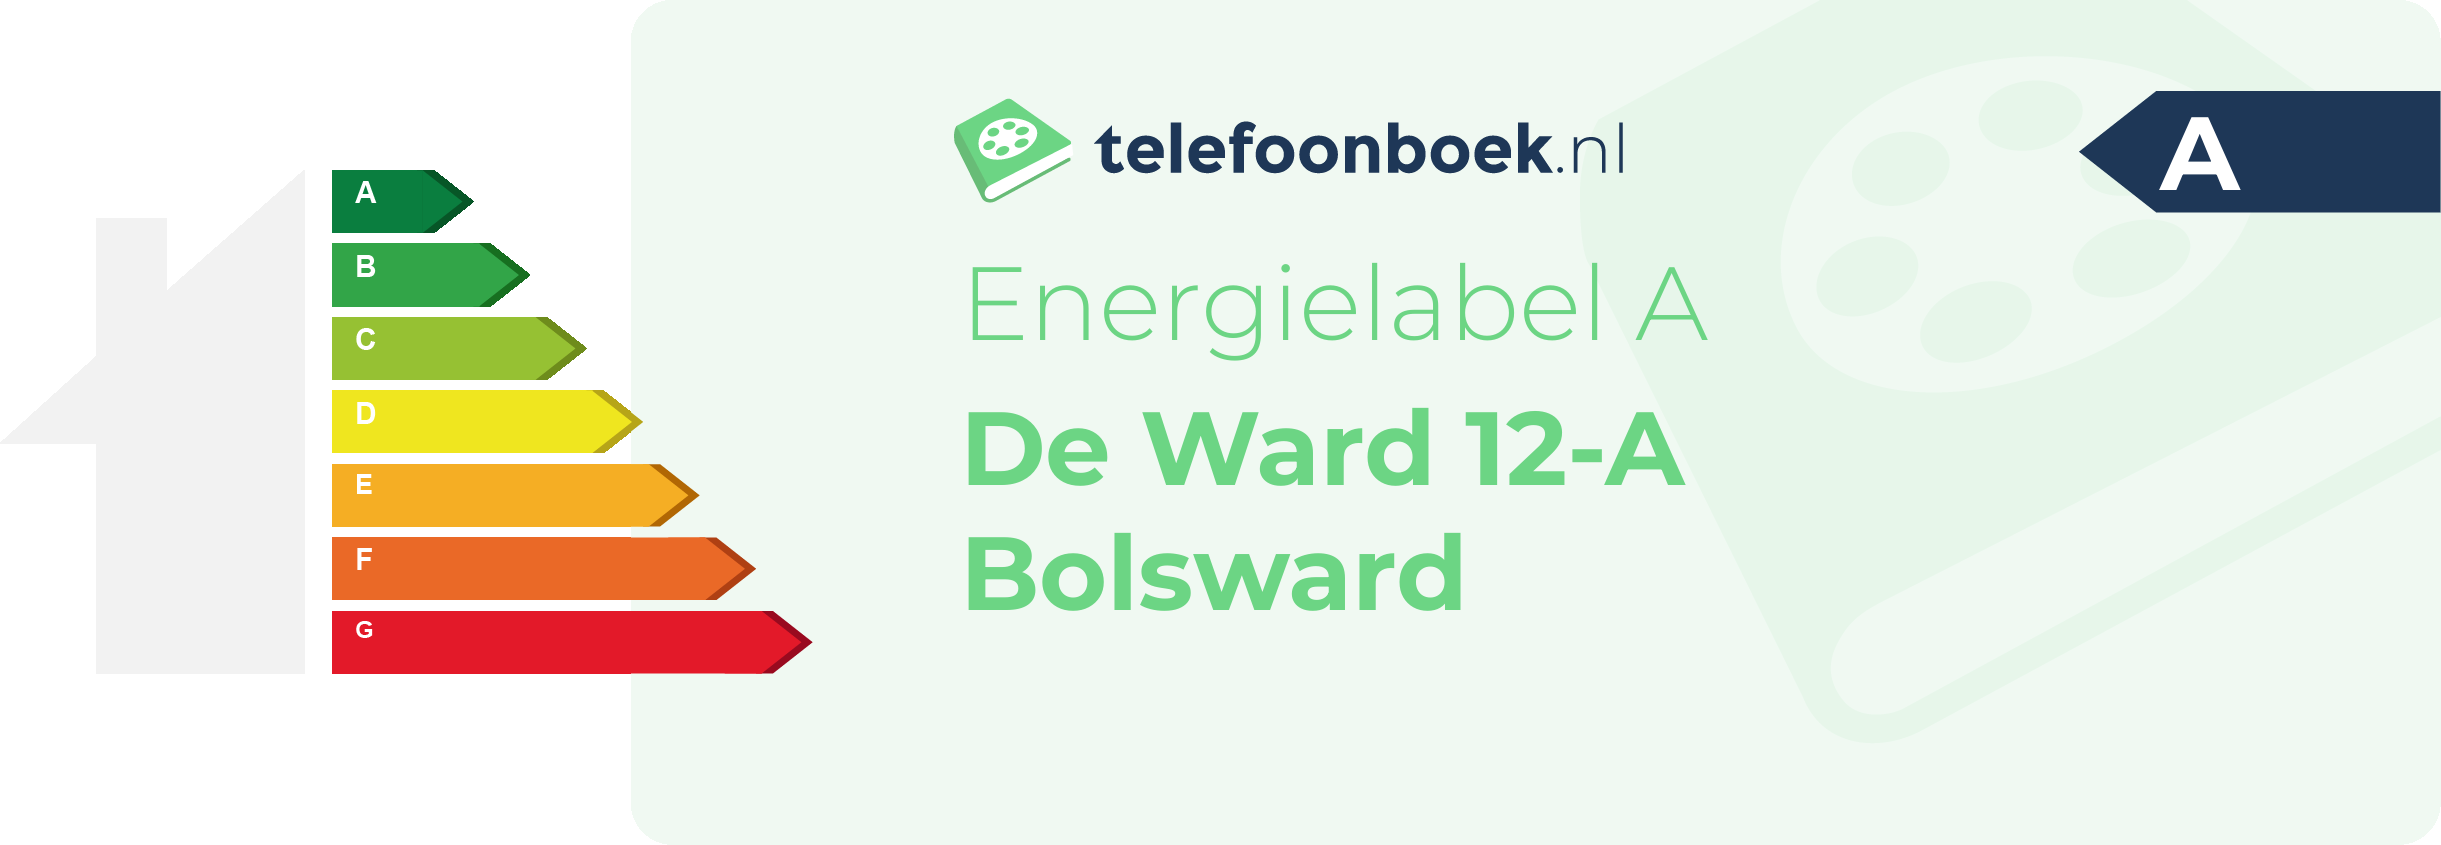 Energielabel De Ward 12-A Bolsward